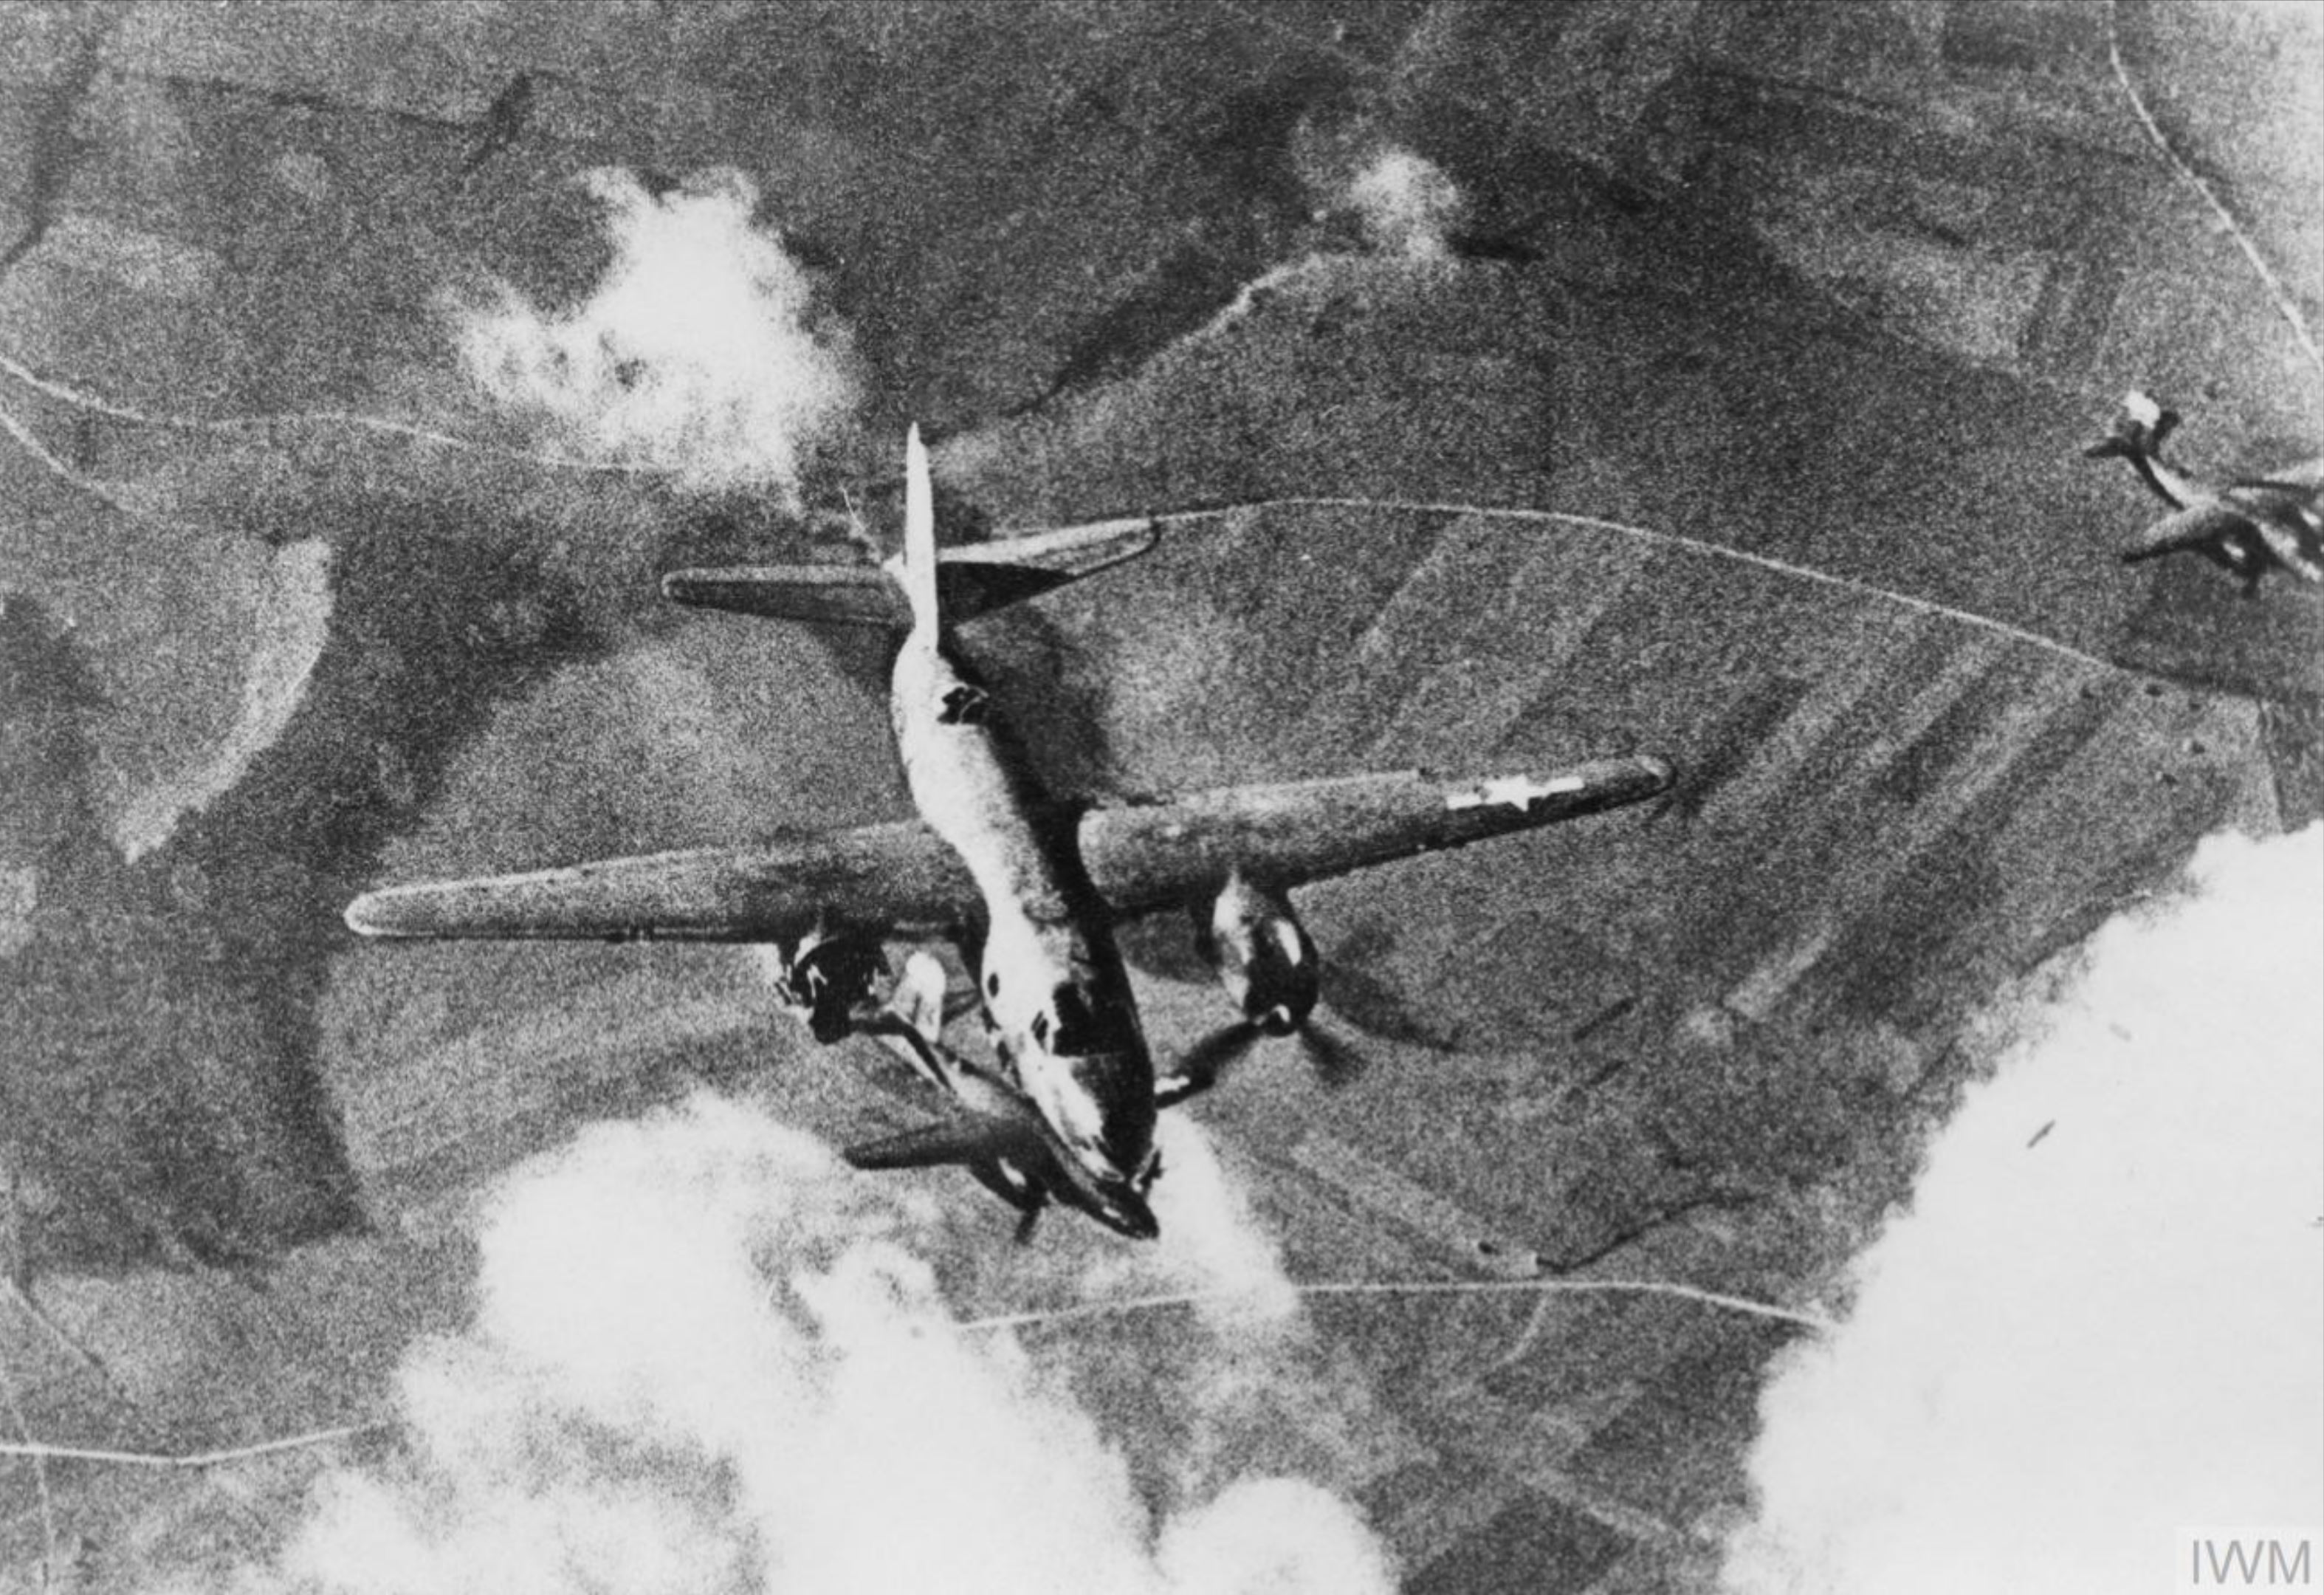 41 35000 B 26C Marauder 8AF 323BG455BS YUR Swamp Chicken sd by flak over France 5 Feb 1944 MACR2056 FRE4684